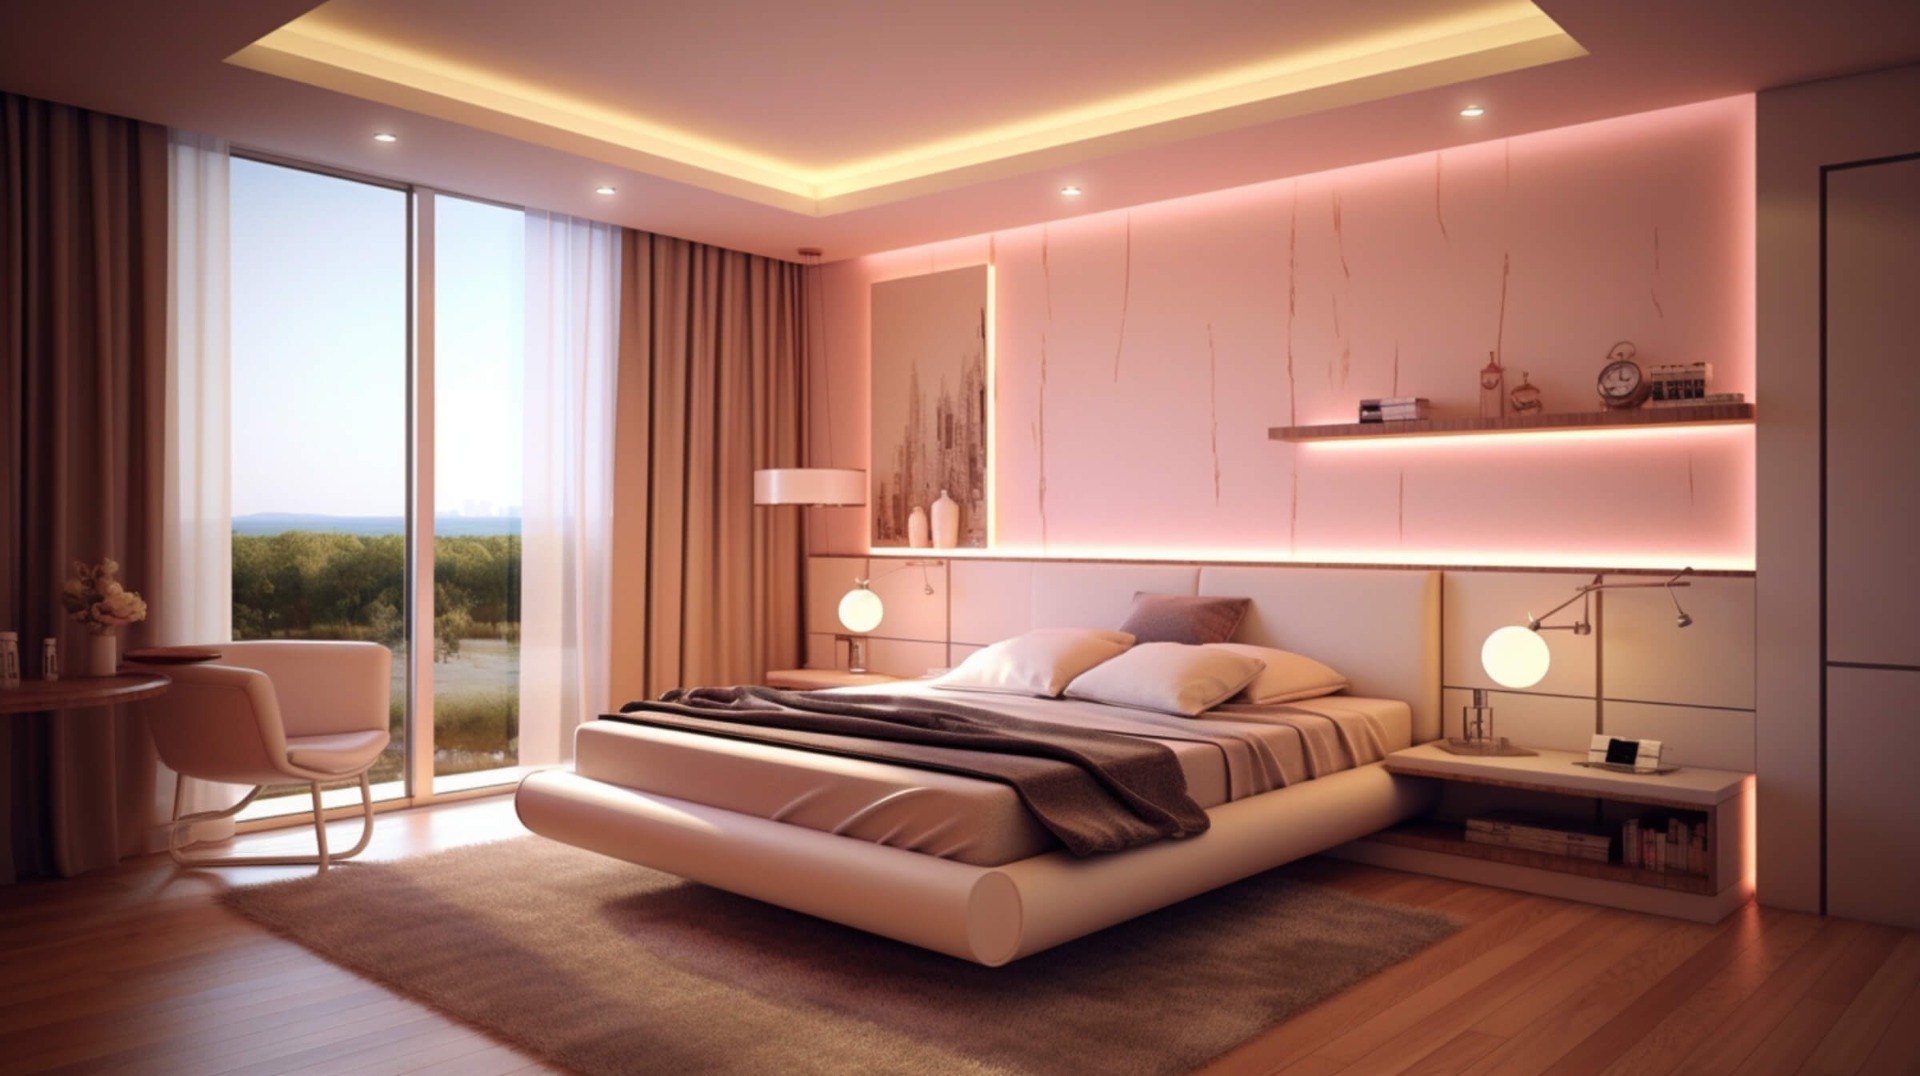 Couple-bedroom-lighting-and-decor-ideas-Hestya